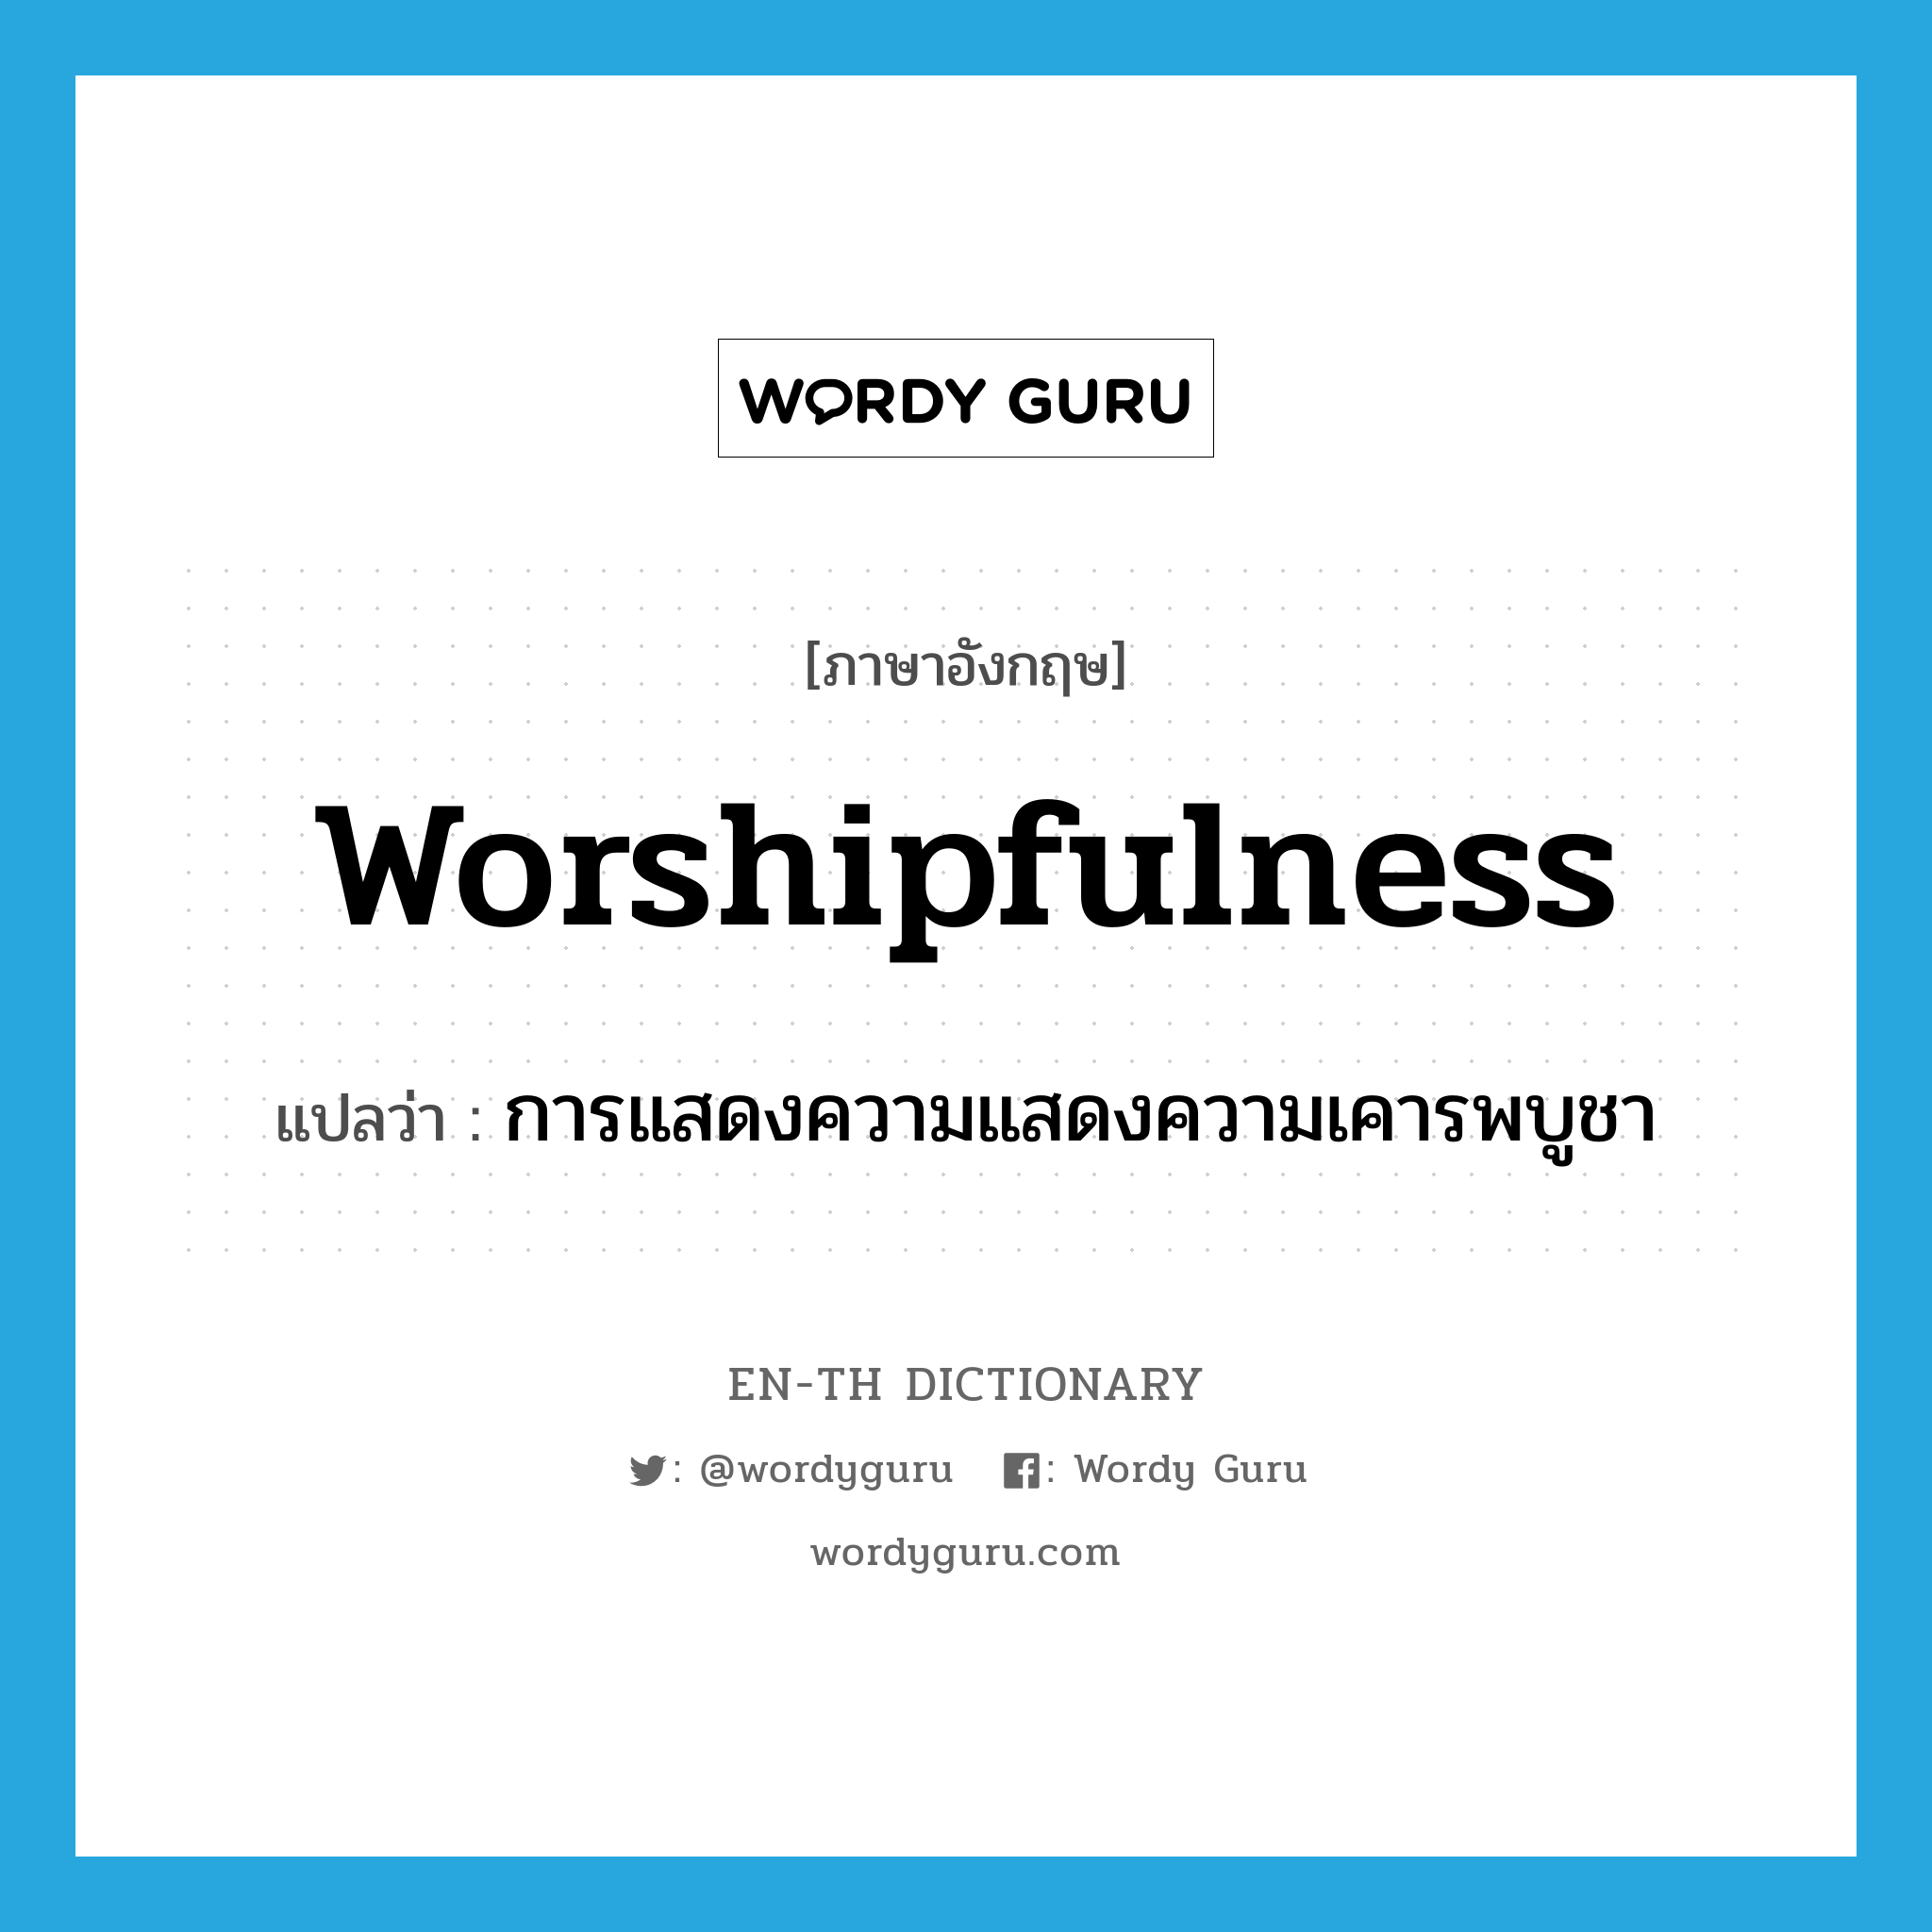 การแสดงความแสดงความเคารพบูชา ภาษาอังกฤษ?, คำศัพท์ภาษาอังกฤษ การแสดงความแสดงความเคารพบูชา แปลว่า worshipfulness ประเภท N หมวด N